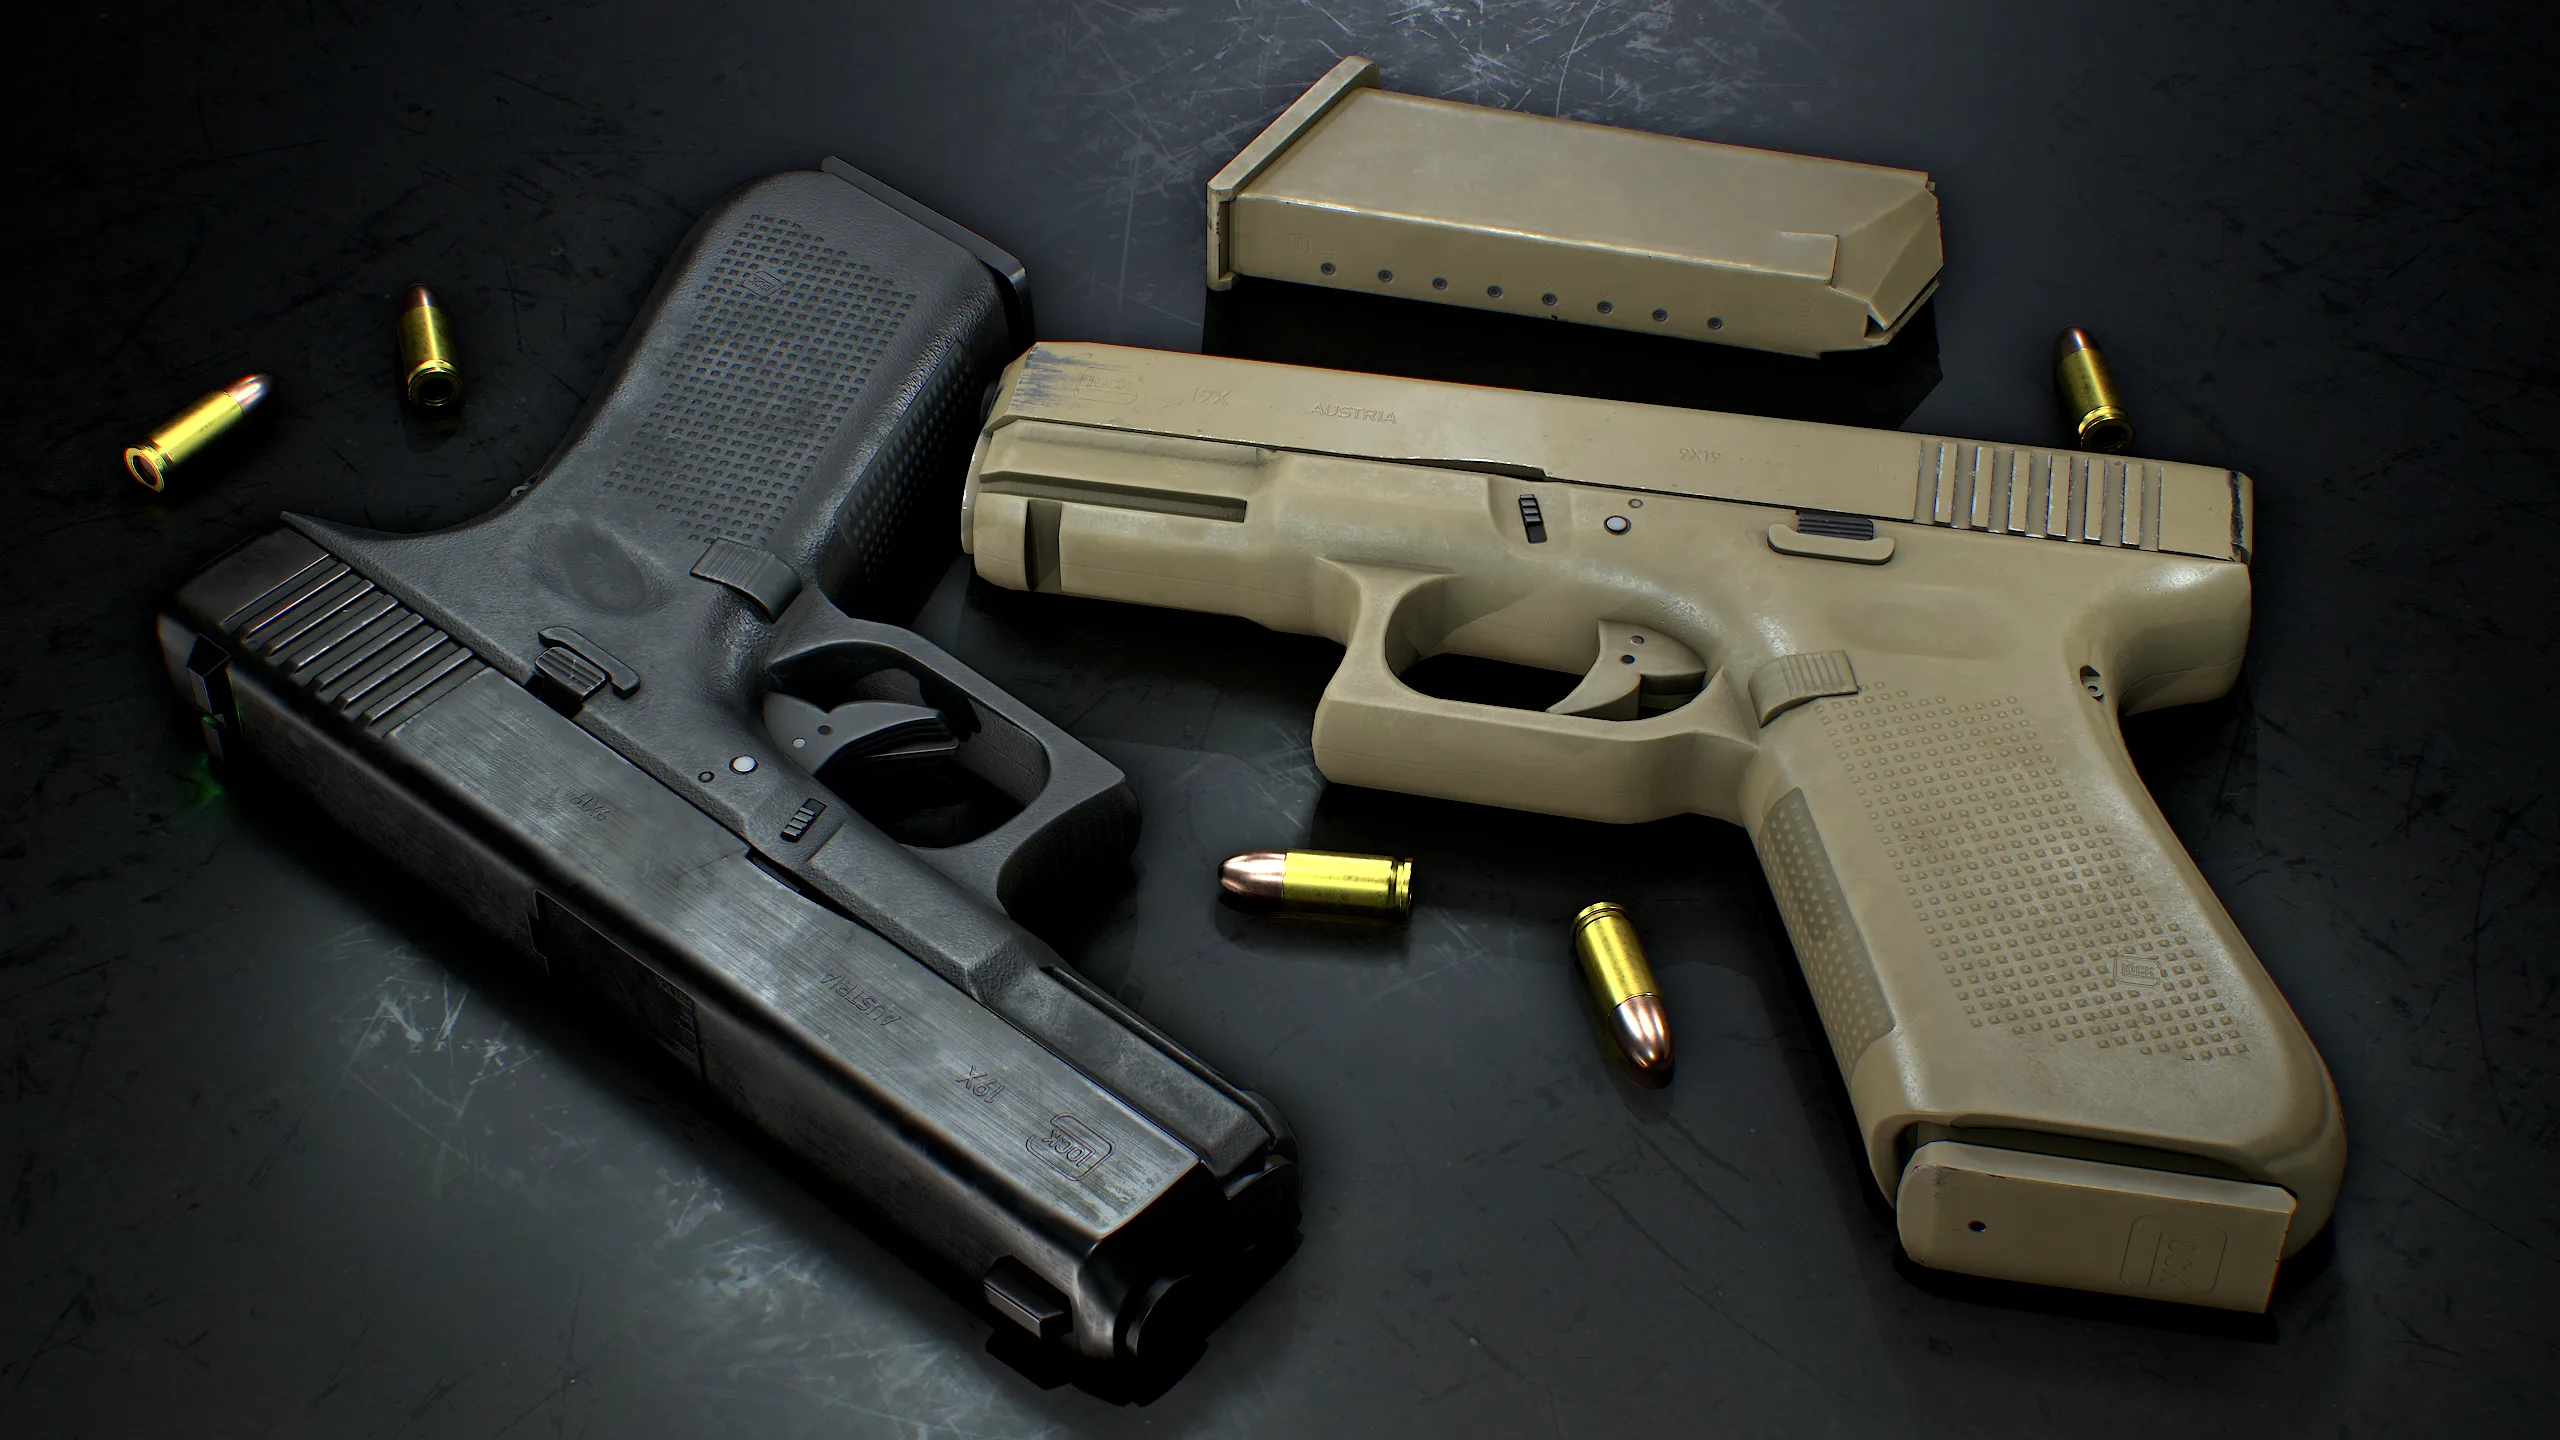 Glock 17 and 19x - Handguns